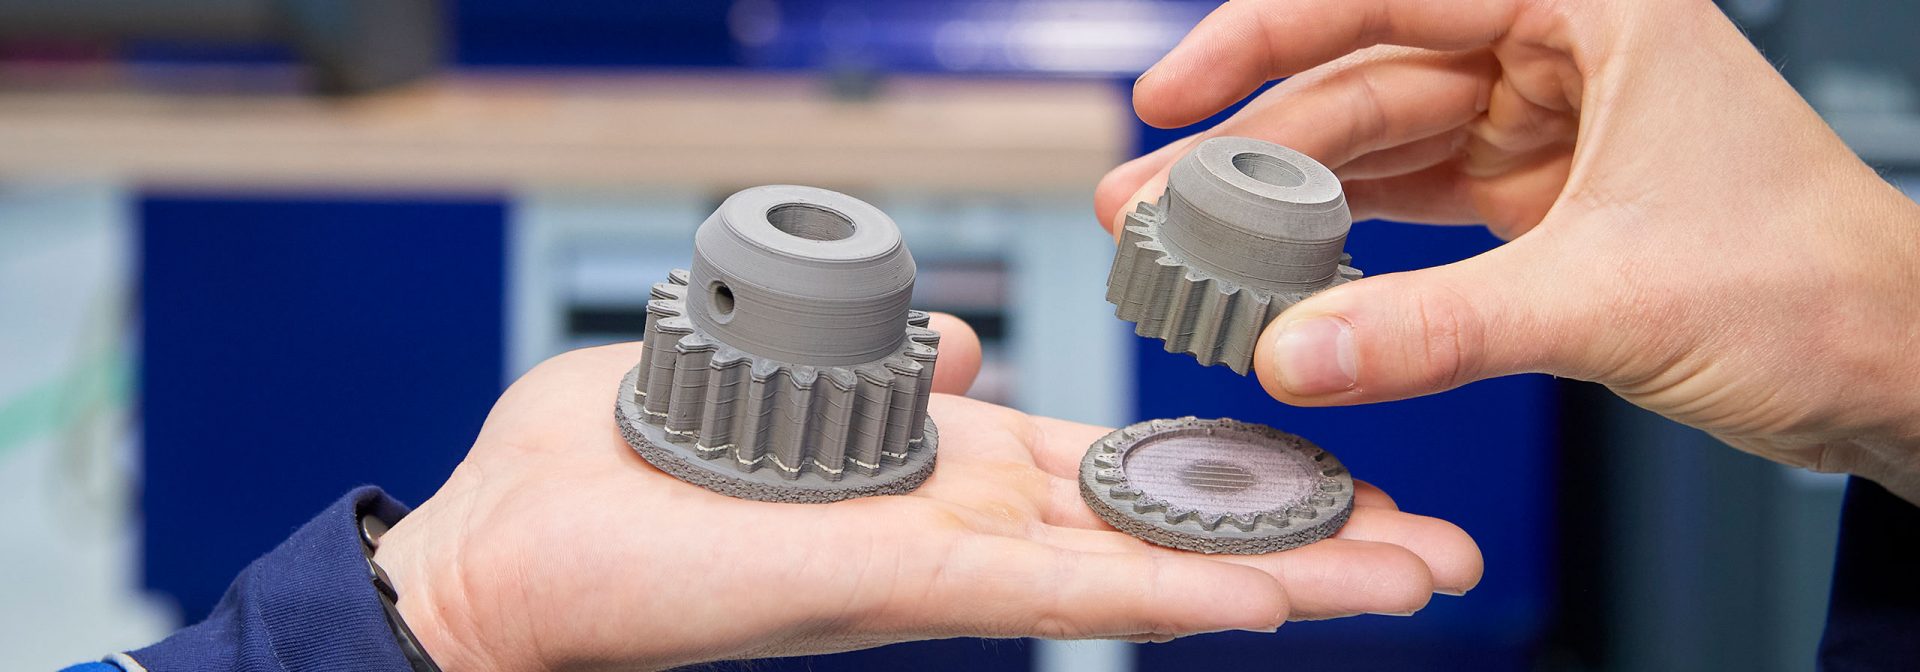 Zahnräder aus dem 3D-Drucker